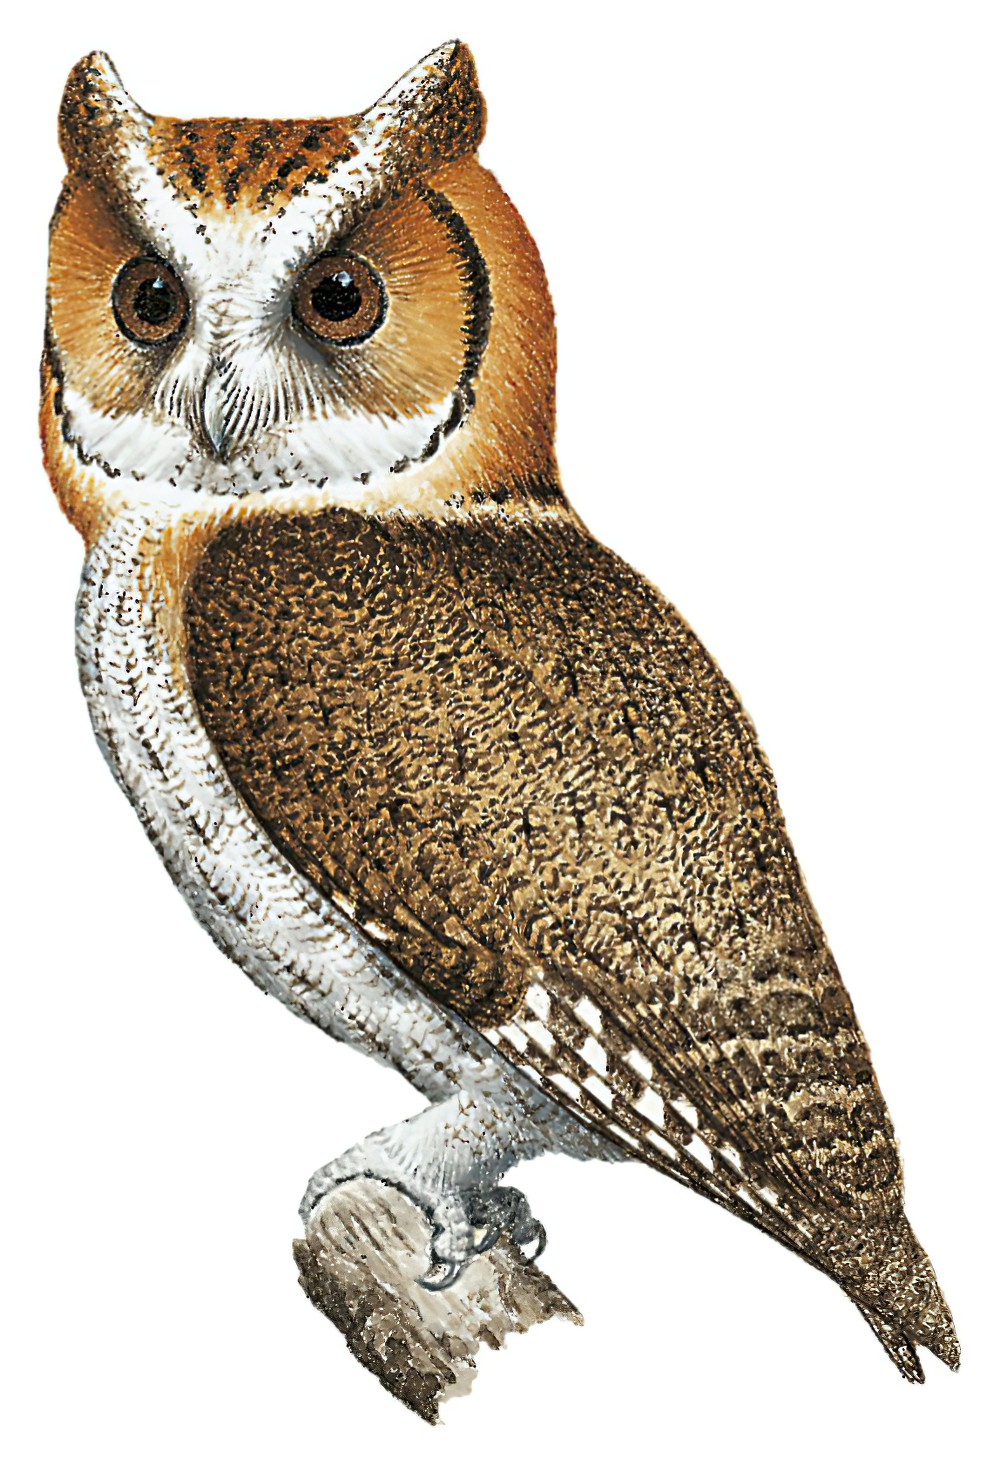 Negros Scops-Owl / Otus nigrorum